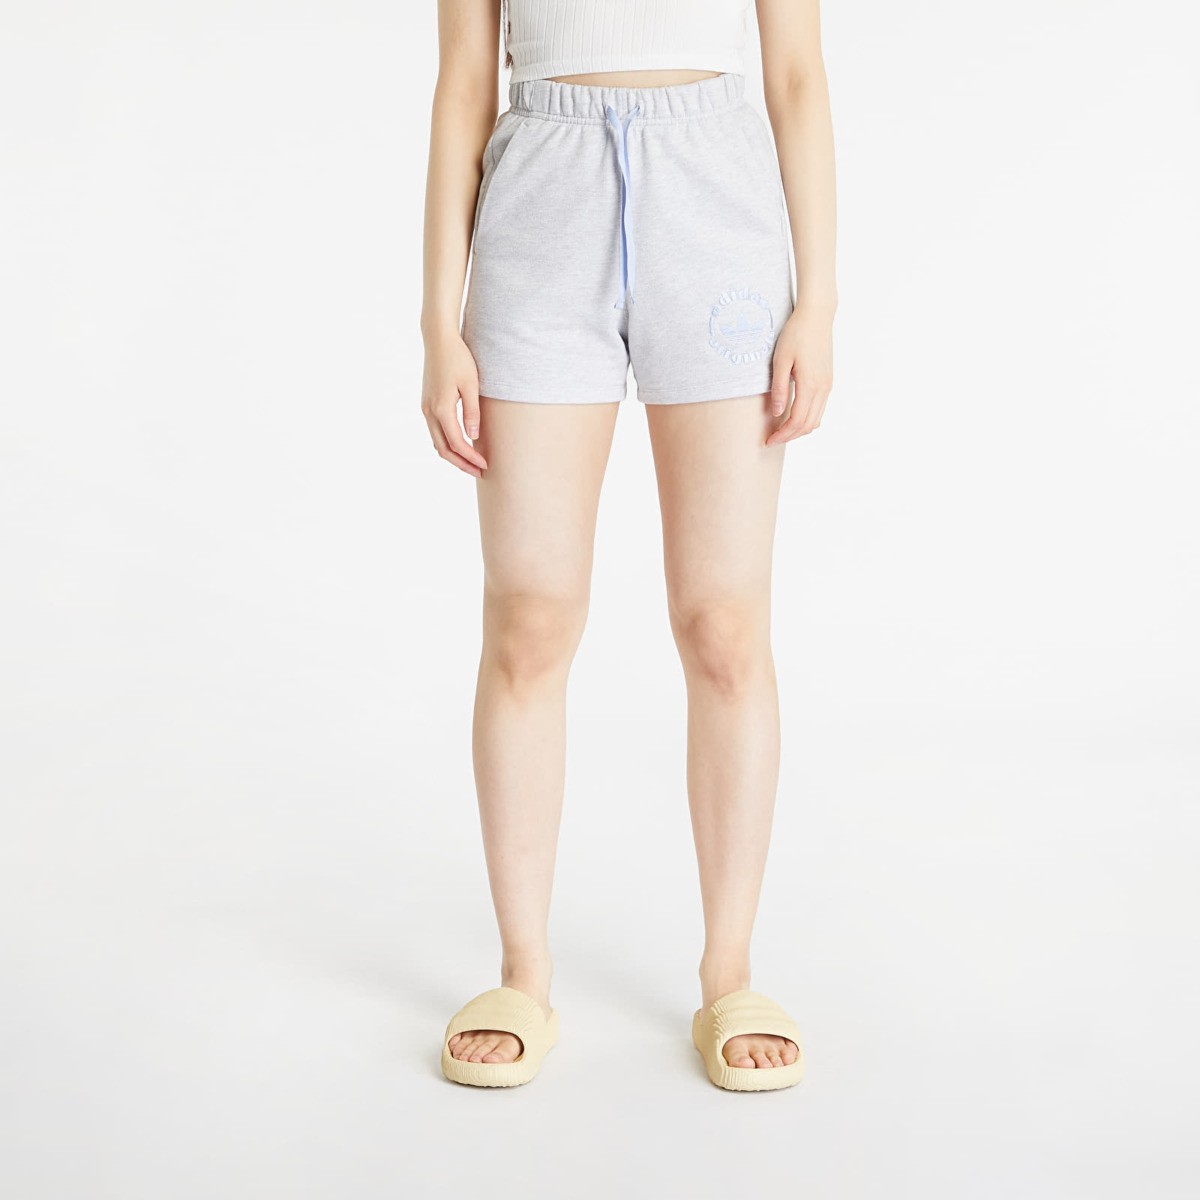 Adidas Shorts Grey for Women by Footshop GOOFASH